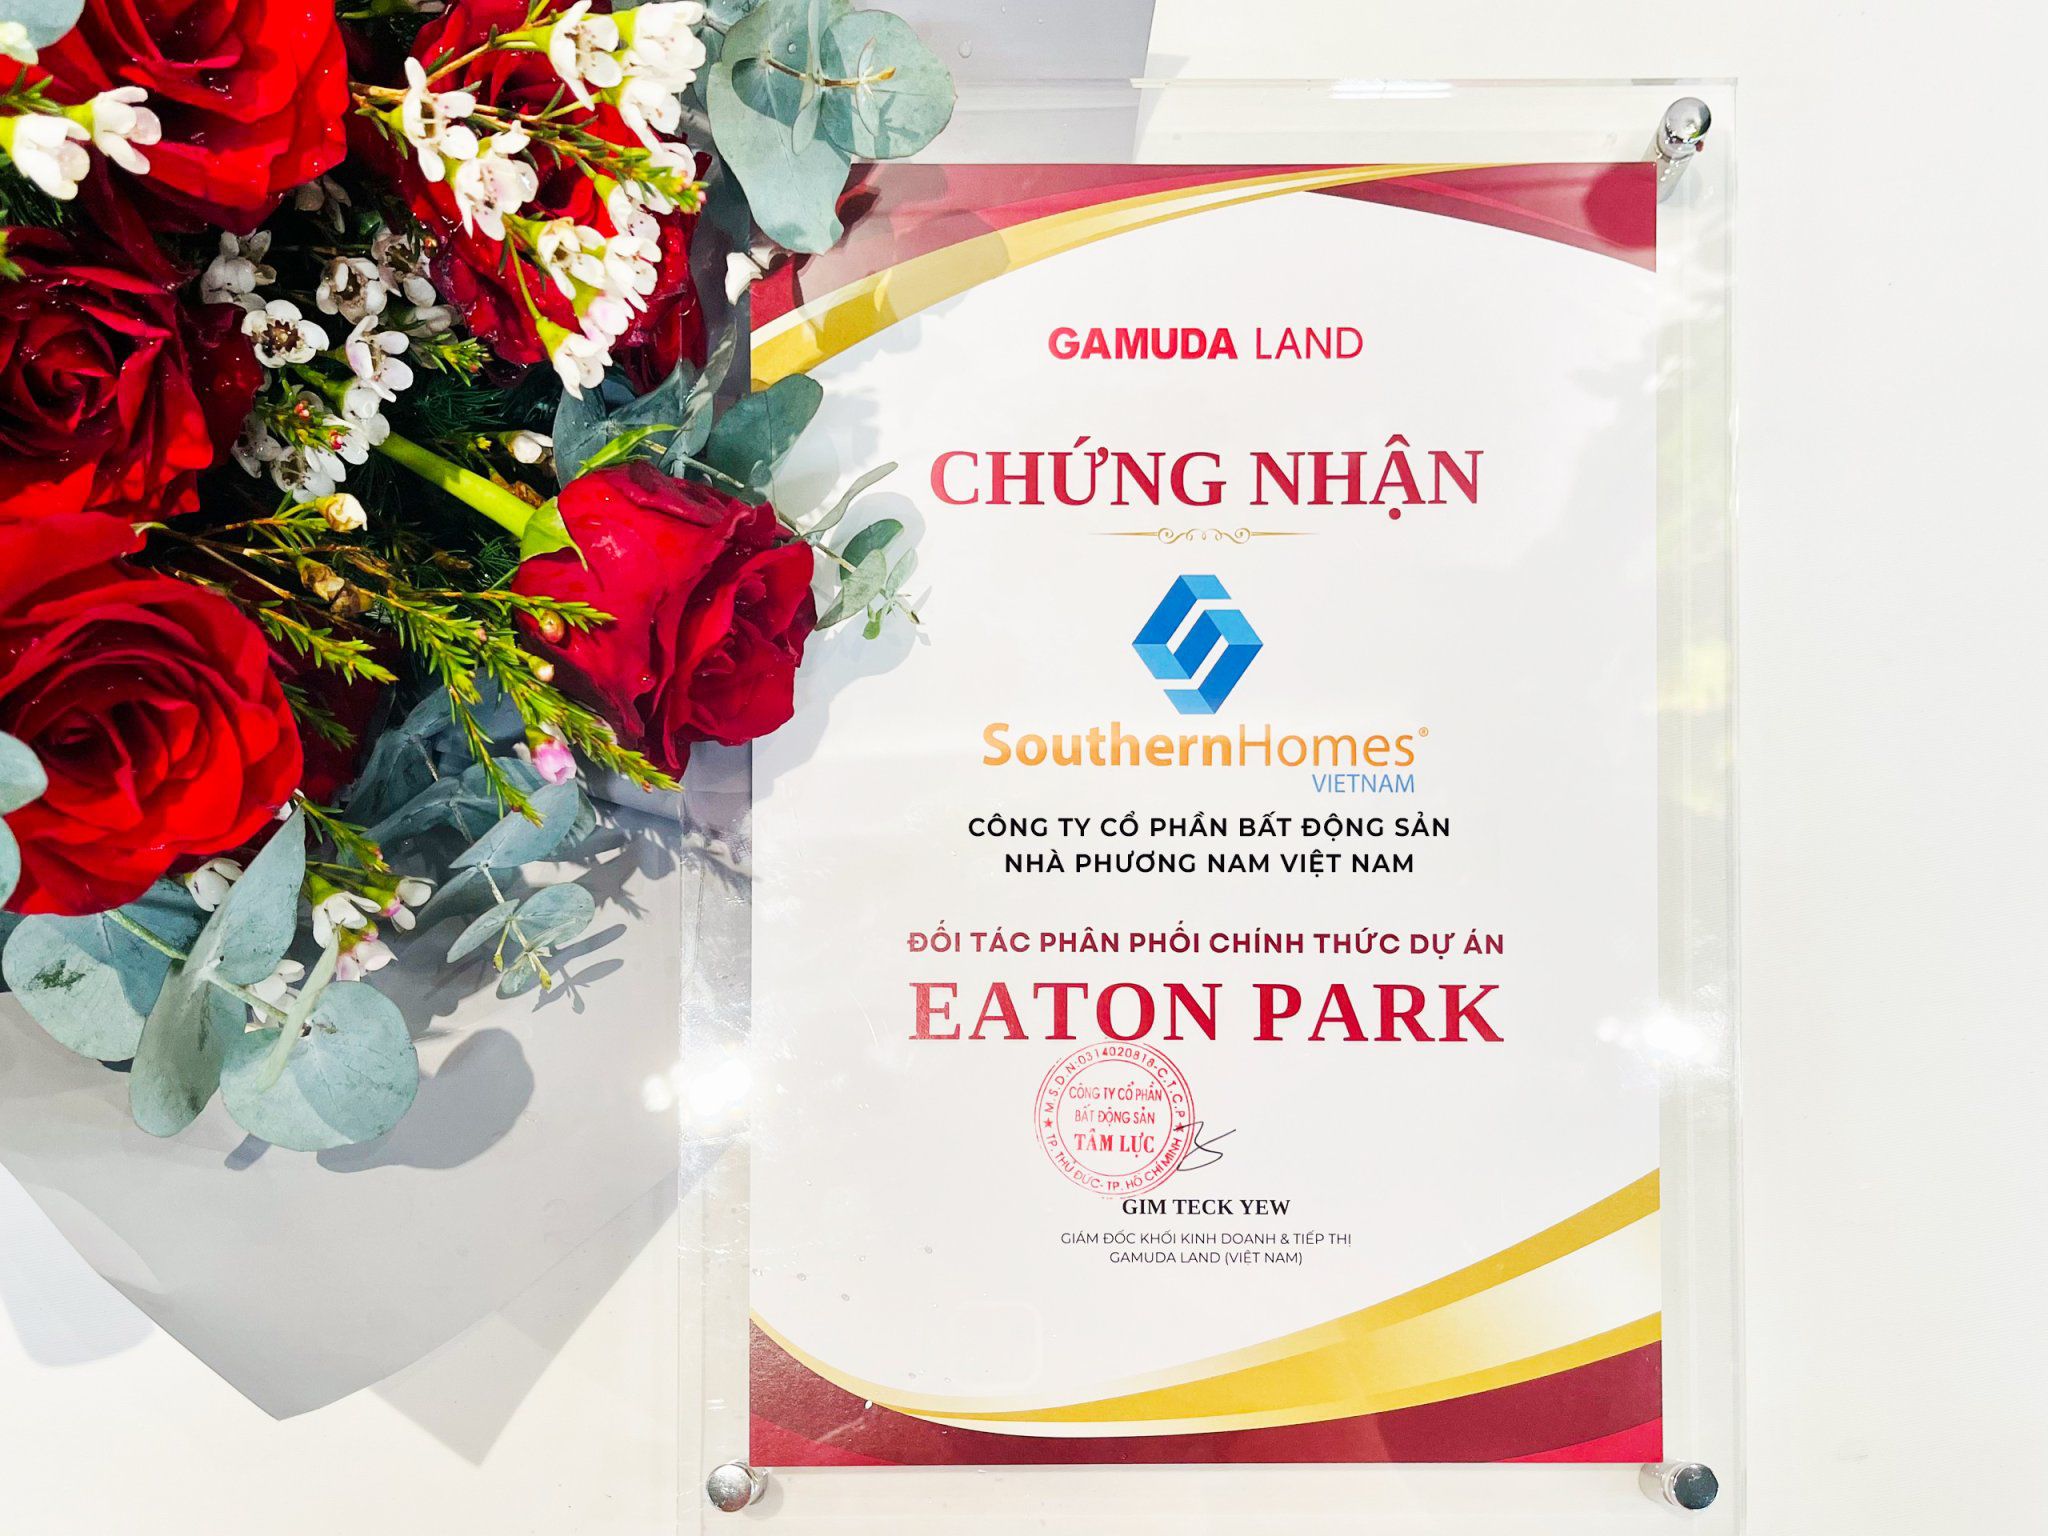 Southern Homes Việt Nam, đối tác phân phối chính thức dự án Eaton Park